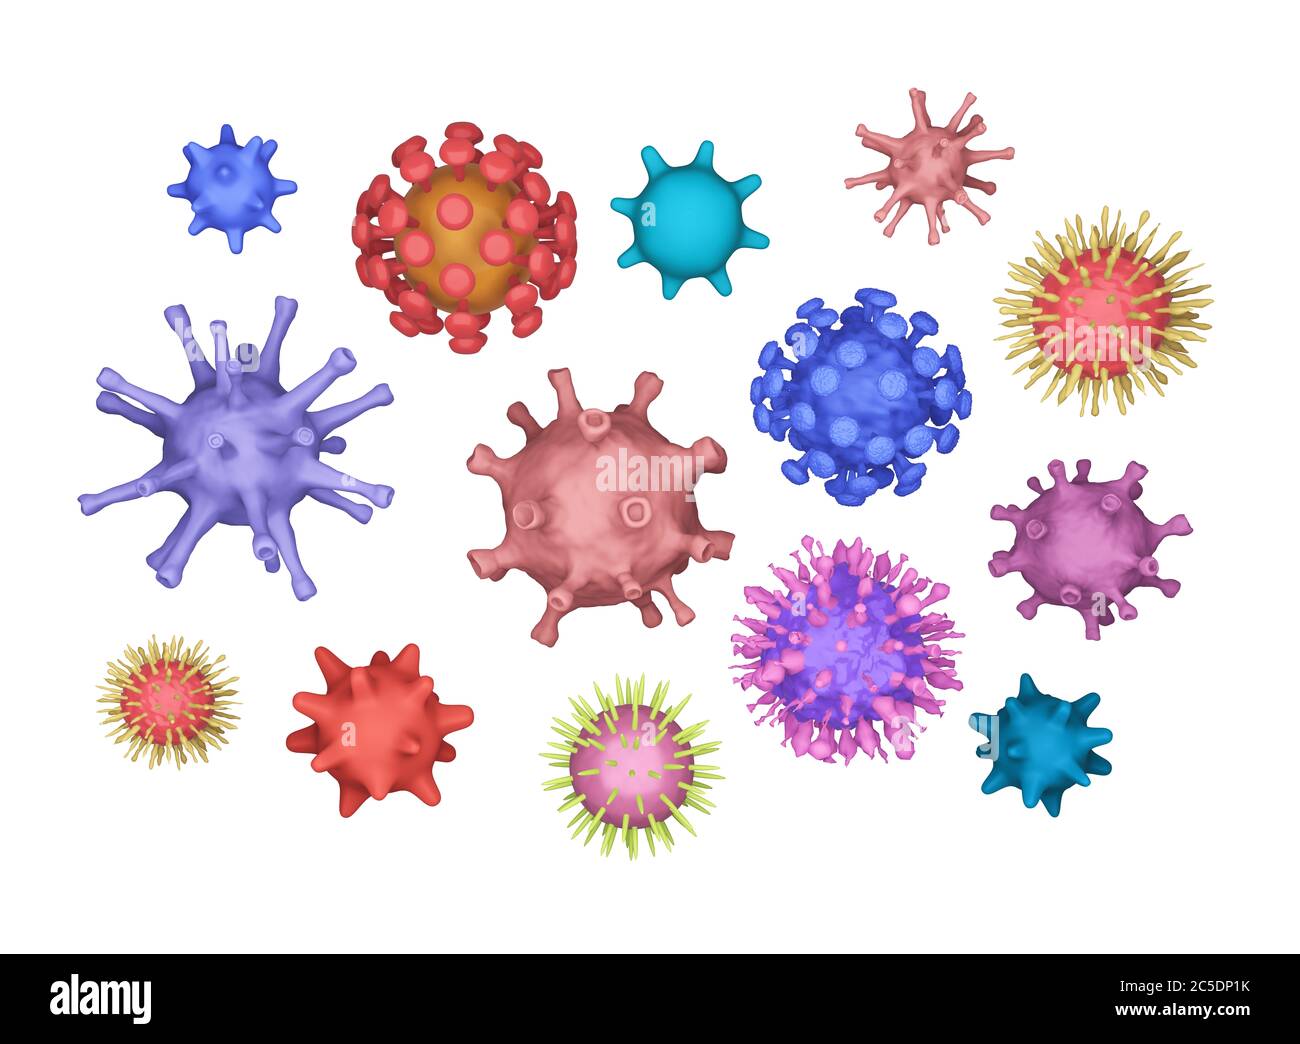 Verschiedene Arten Von Viren Coronavirus Covid 19 Herpes Geschwindigkeit Hiv Biologie Organismen Hintergrund In Collage Stil Viele Verschiedene Viren Auf Einem Weissen B Stockfotografie Alamy